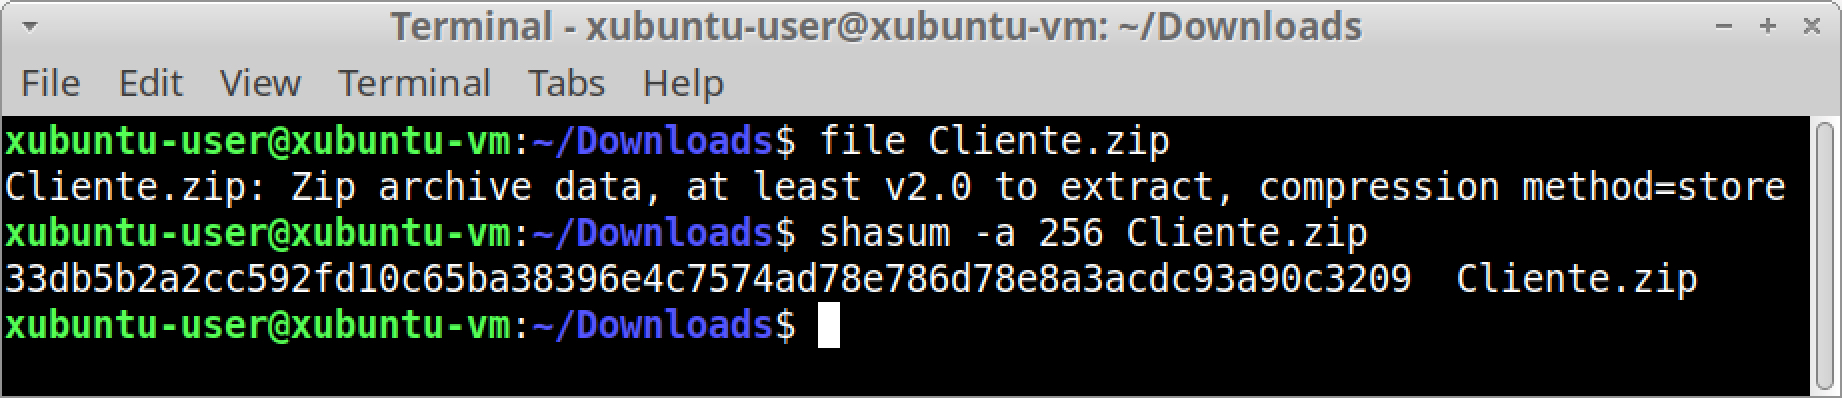 画像6は、Linuxのターミナルで、ファイルの種類とSHA-256ハッシュを確認する方法を示したスクリーンショットです。 